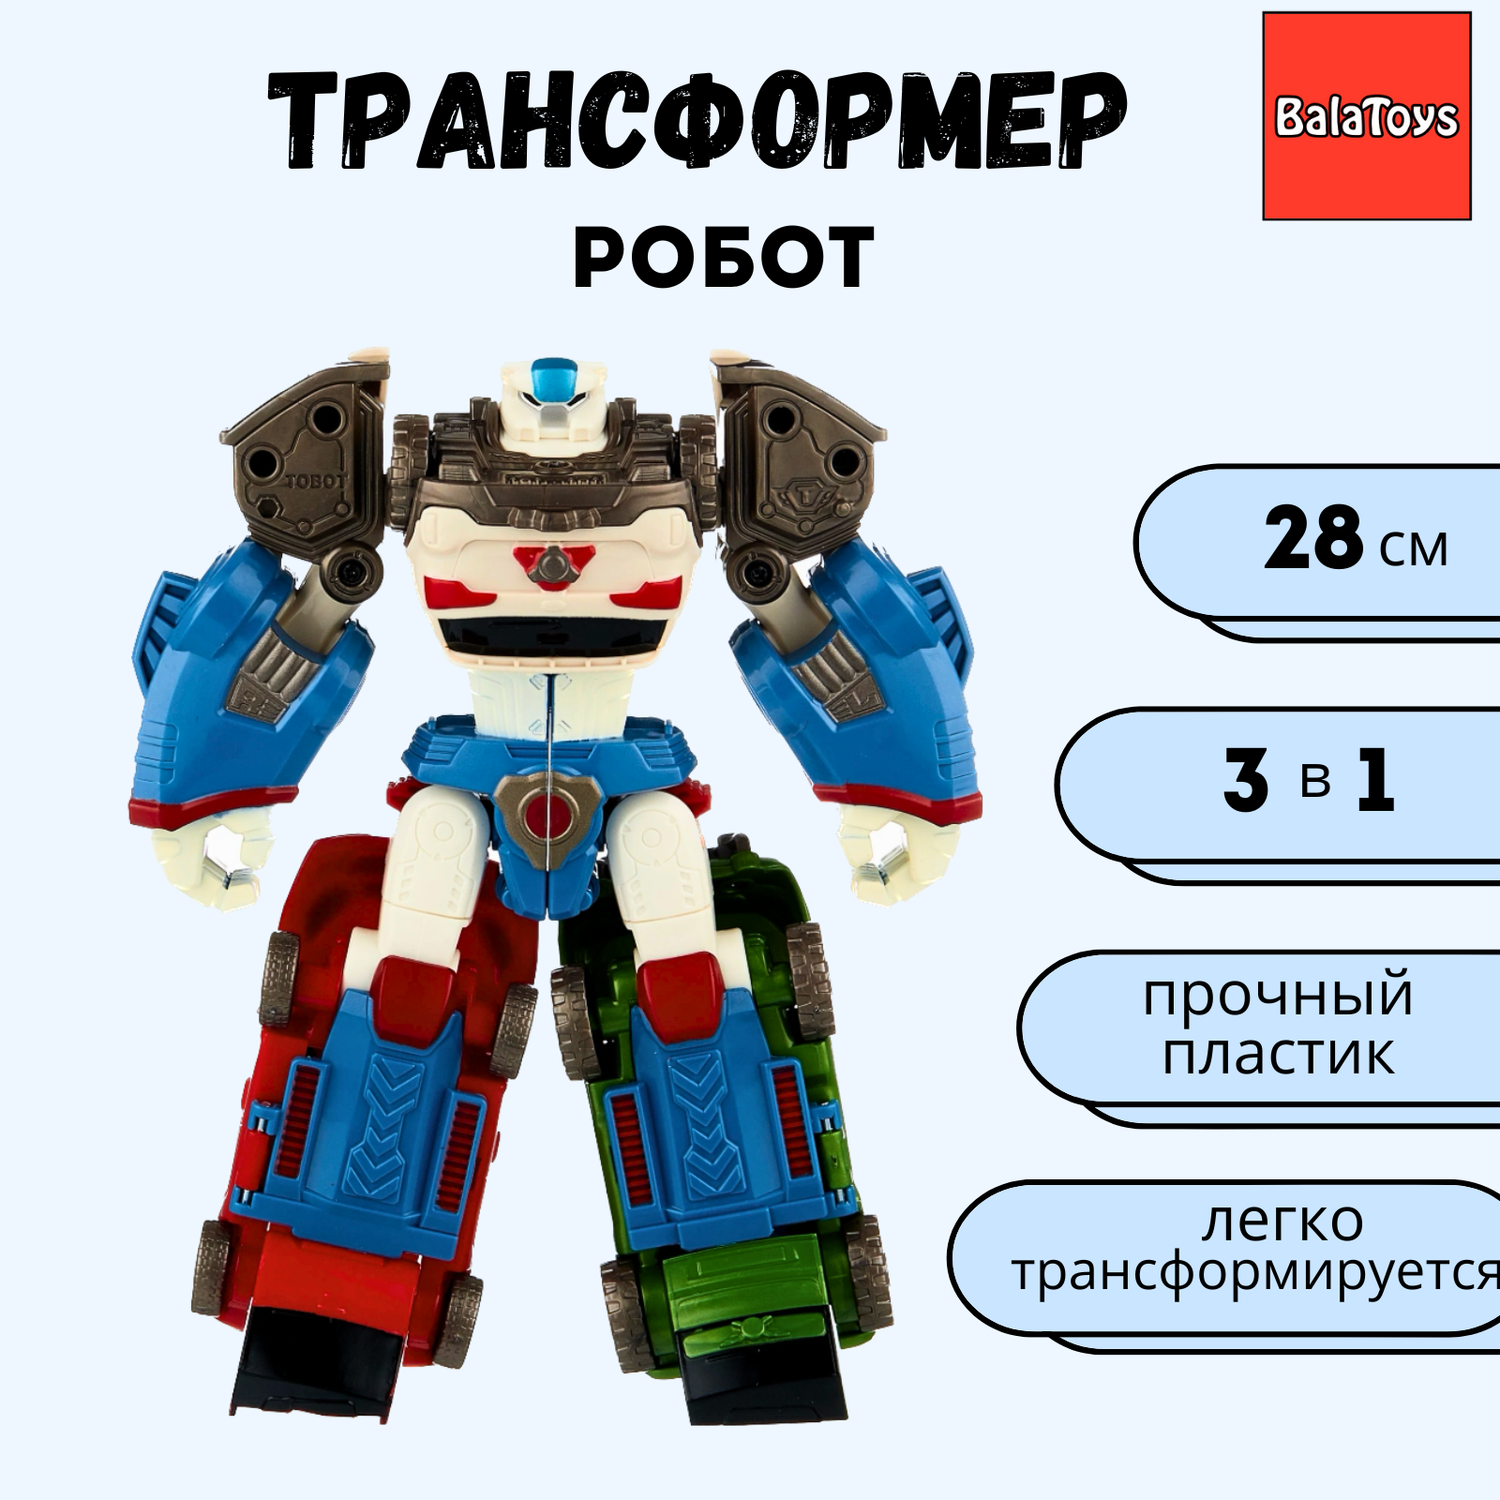 Робот трансформер 3 в 1 BalaToys 28 см - фото 1